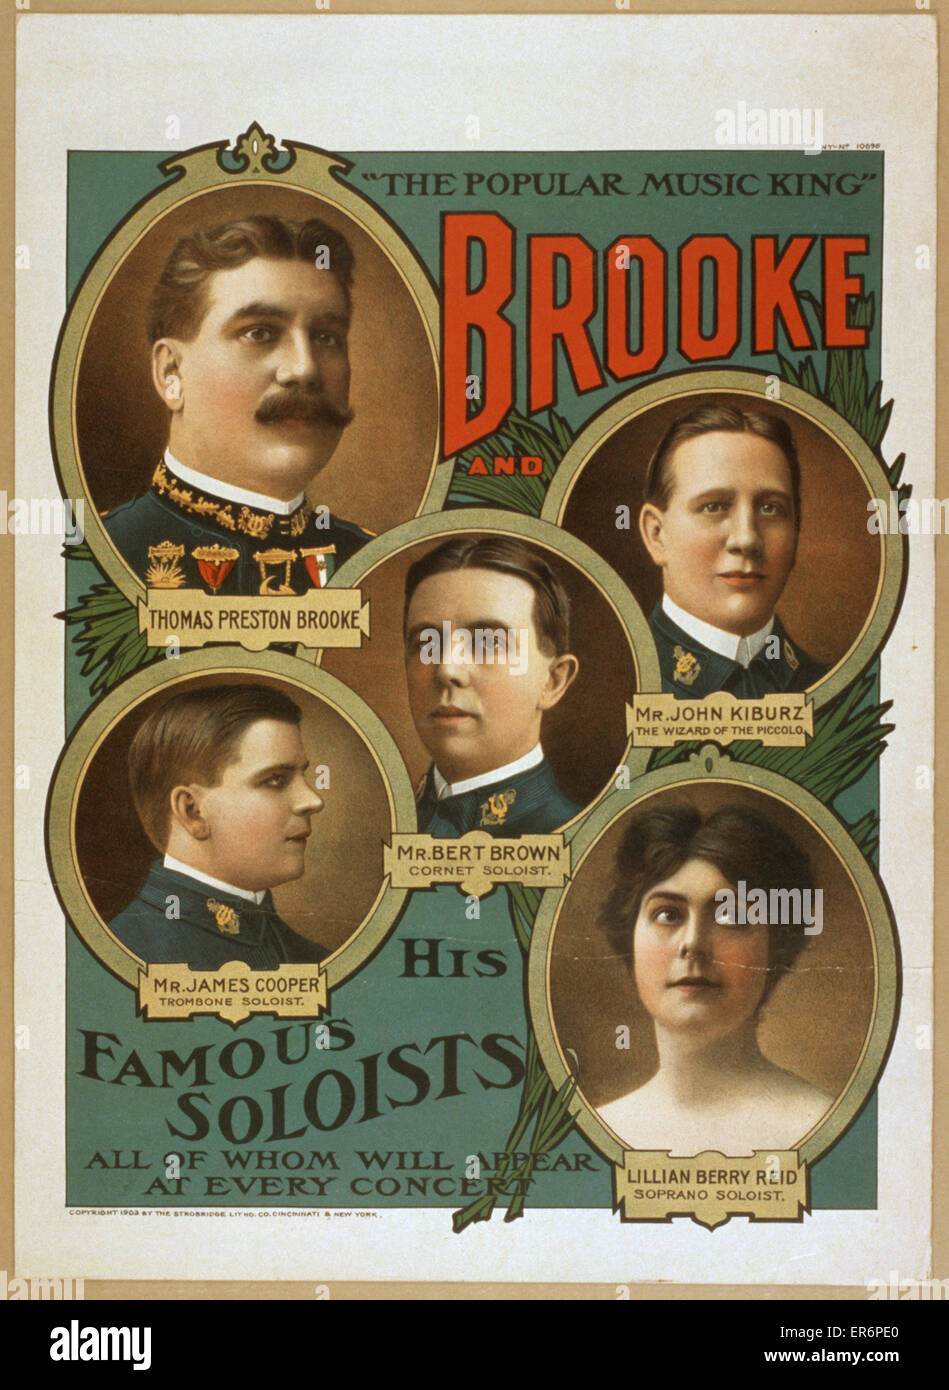 Brooke e i suoi solisti famosi, tutti che appariranno a ev Foto Stock